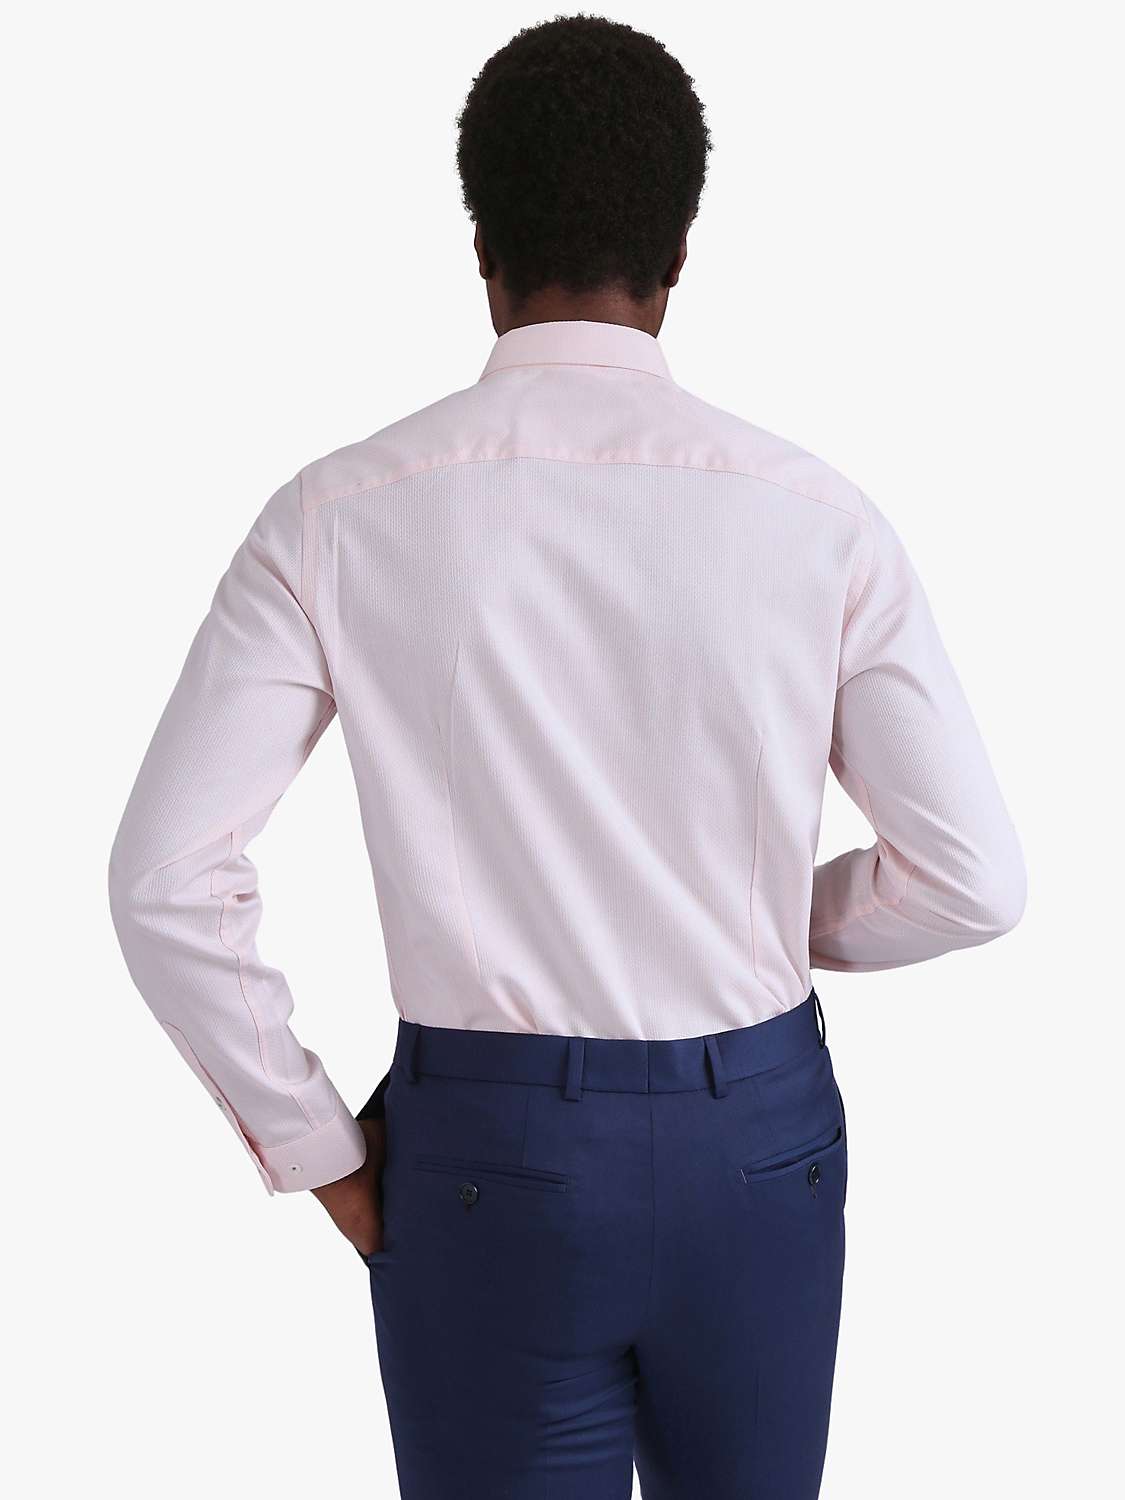 Buy Ted Baker Dorian Long Sleeve Slim Fit Shirt, Pink Online at johnlewis.com